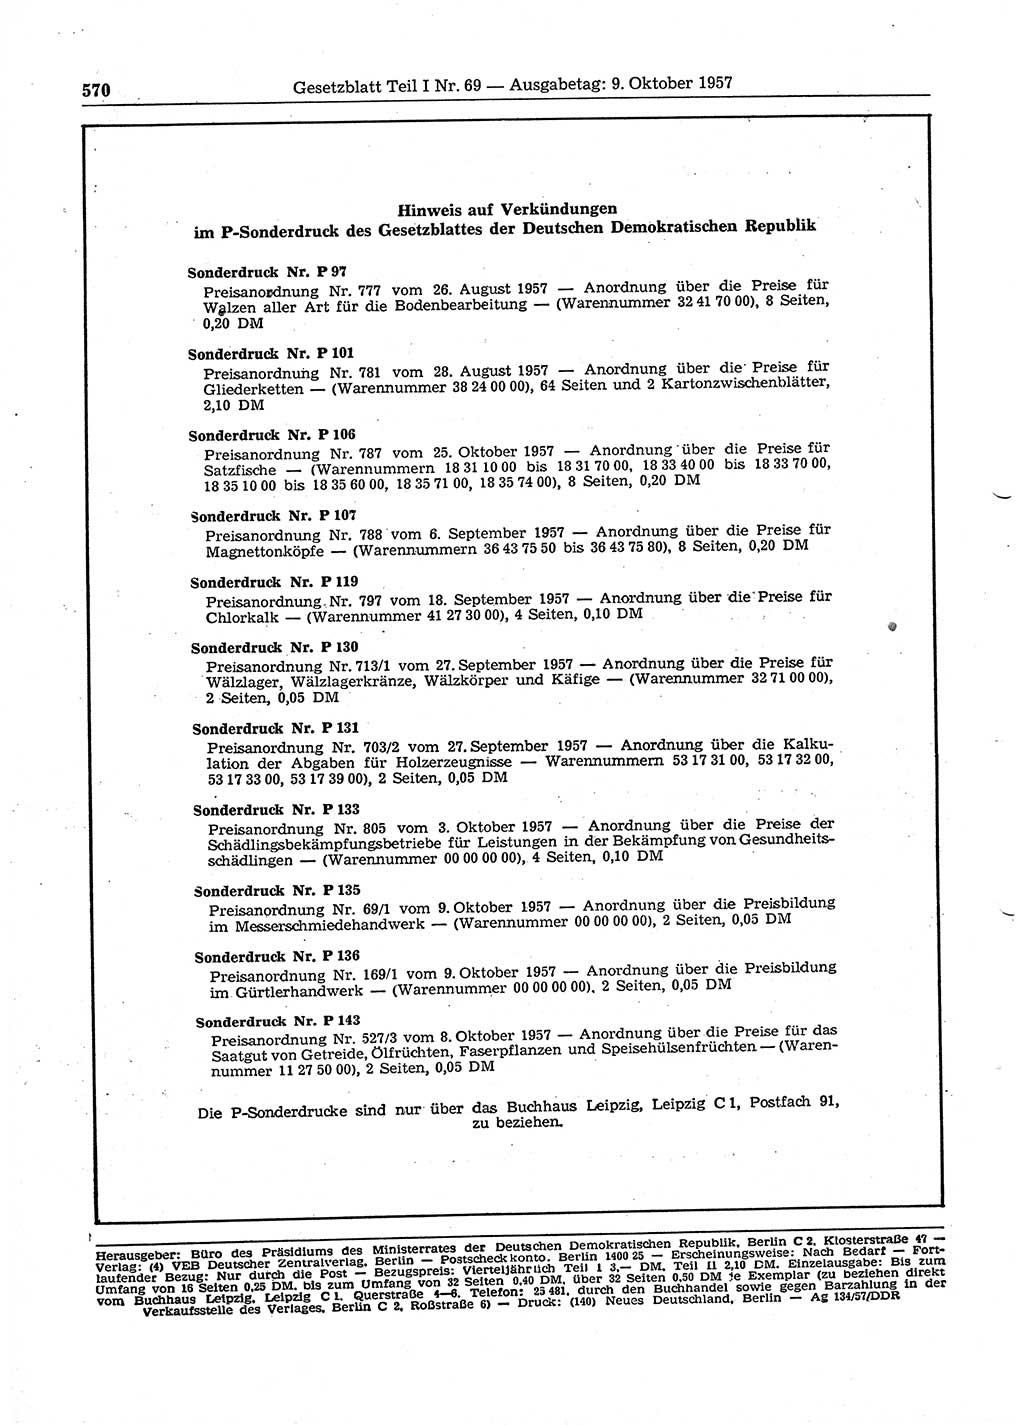 Gesetzblatt (GBl.) der Deutschen Demokratischen Republik (DDR) Teil Ⅰ 1957, Seite 570 (GBl. DDR Ⅰ 1957, S. 570)